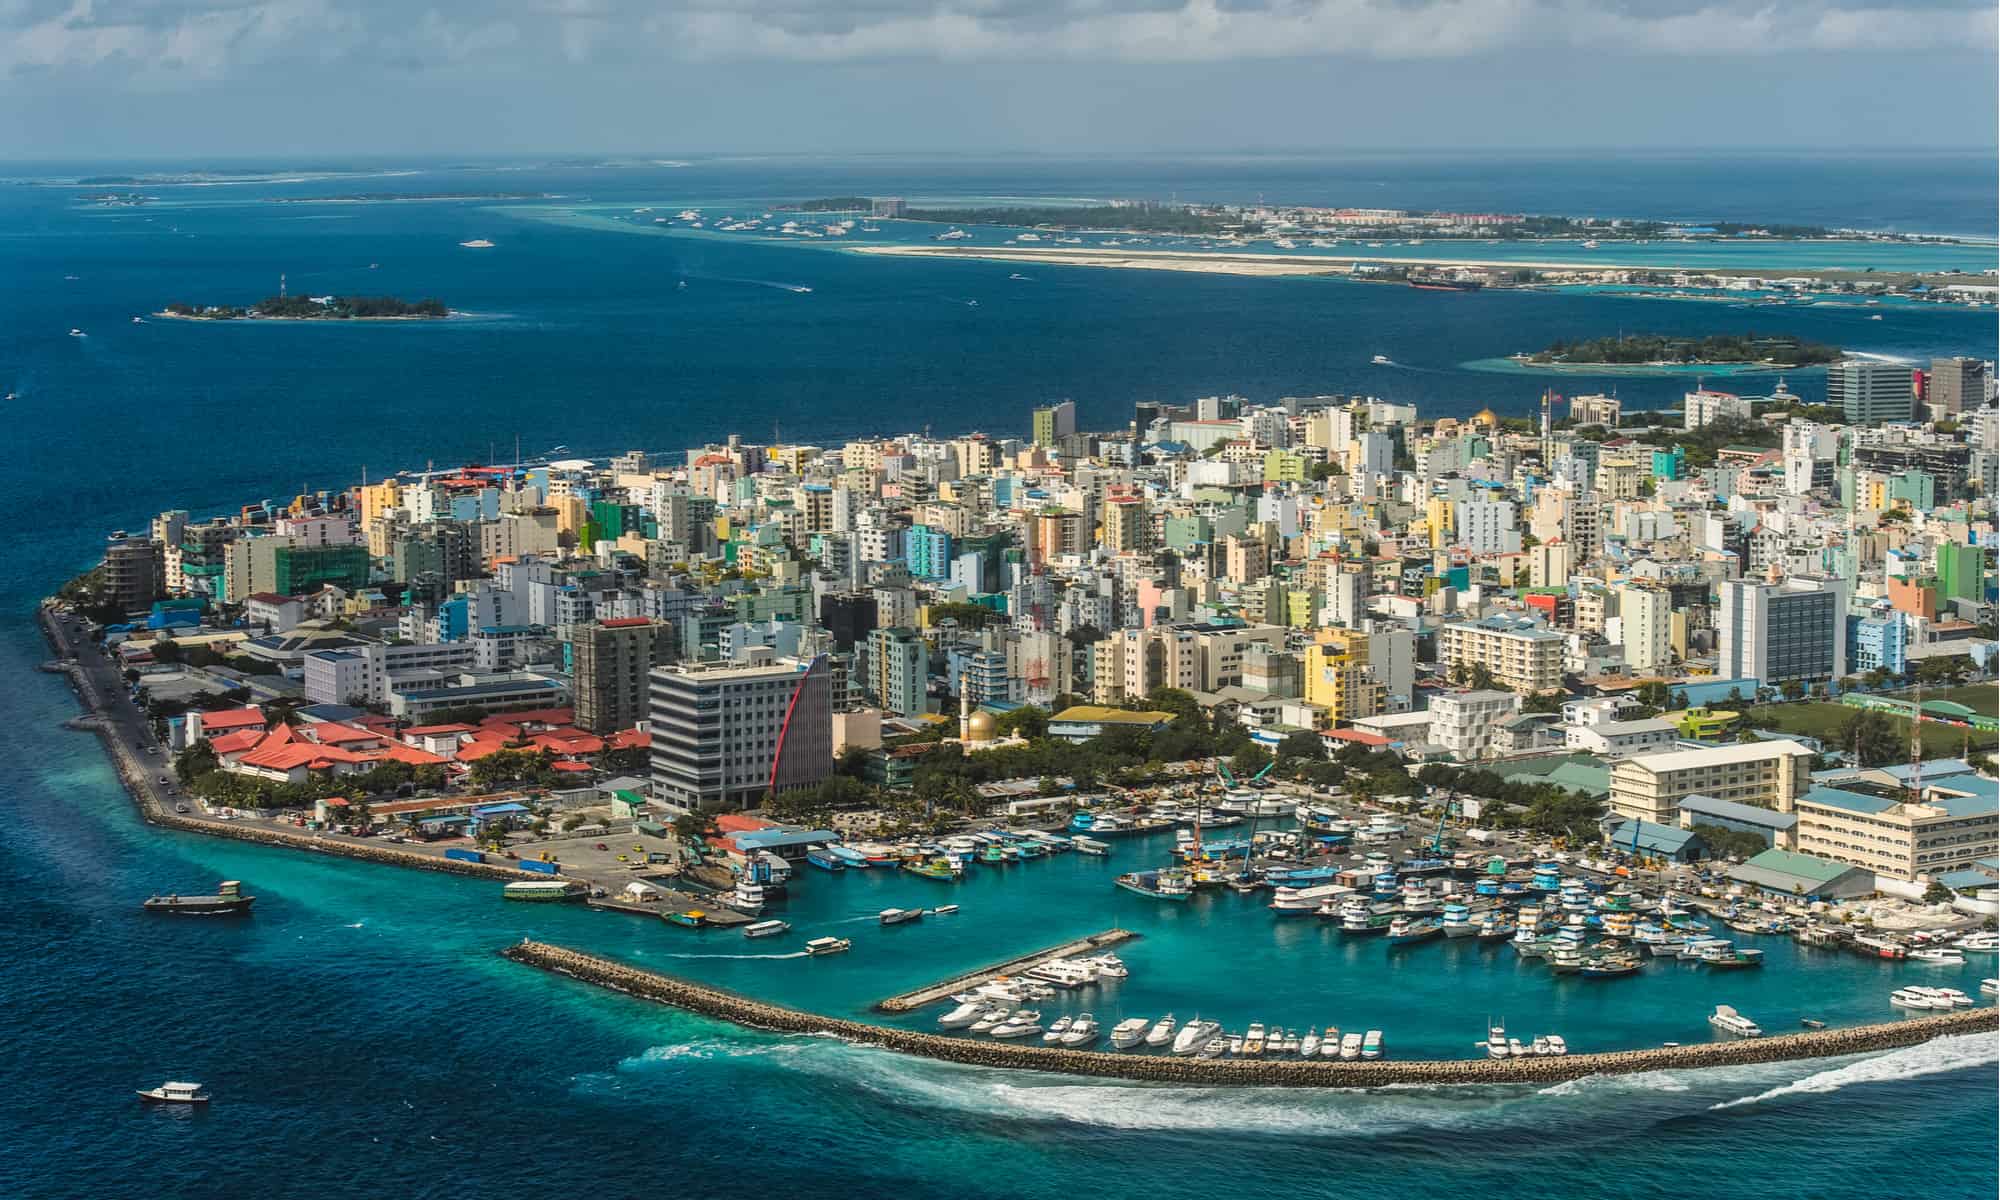 Malé – Capitale delle Maldive